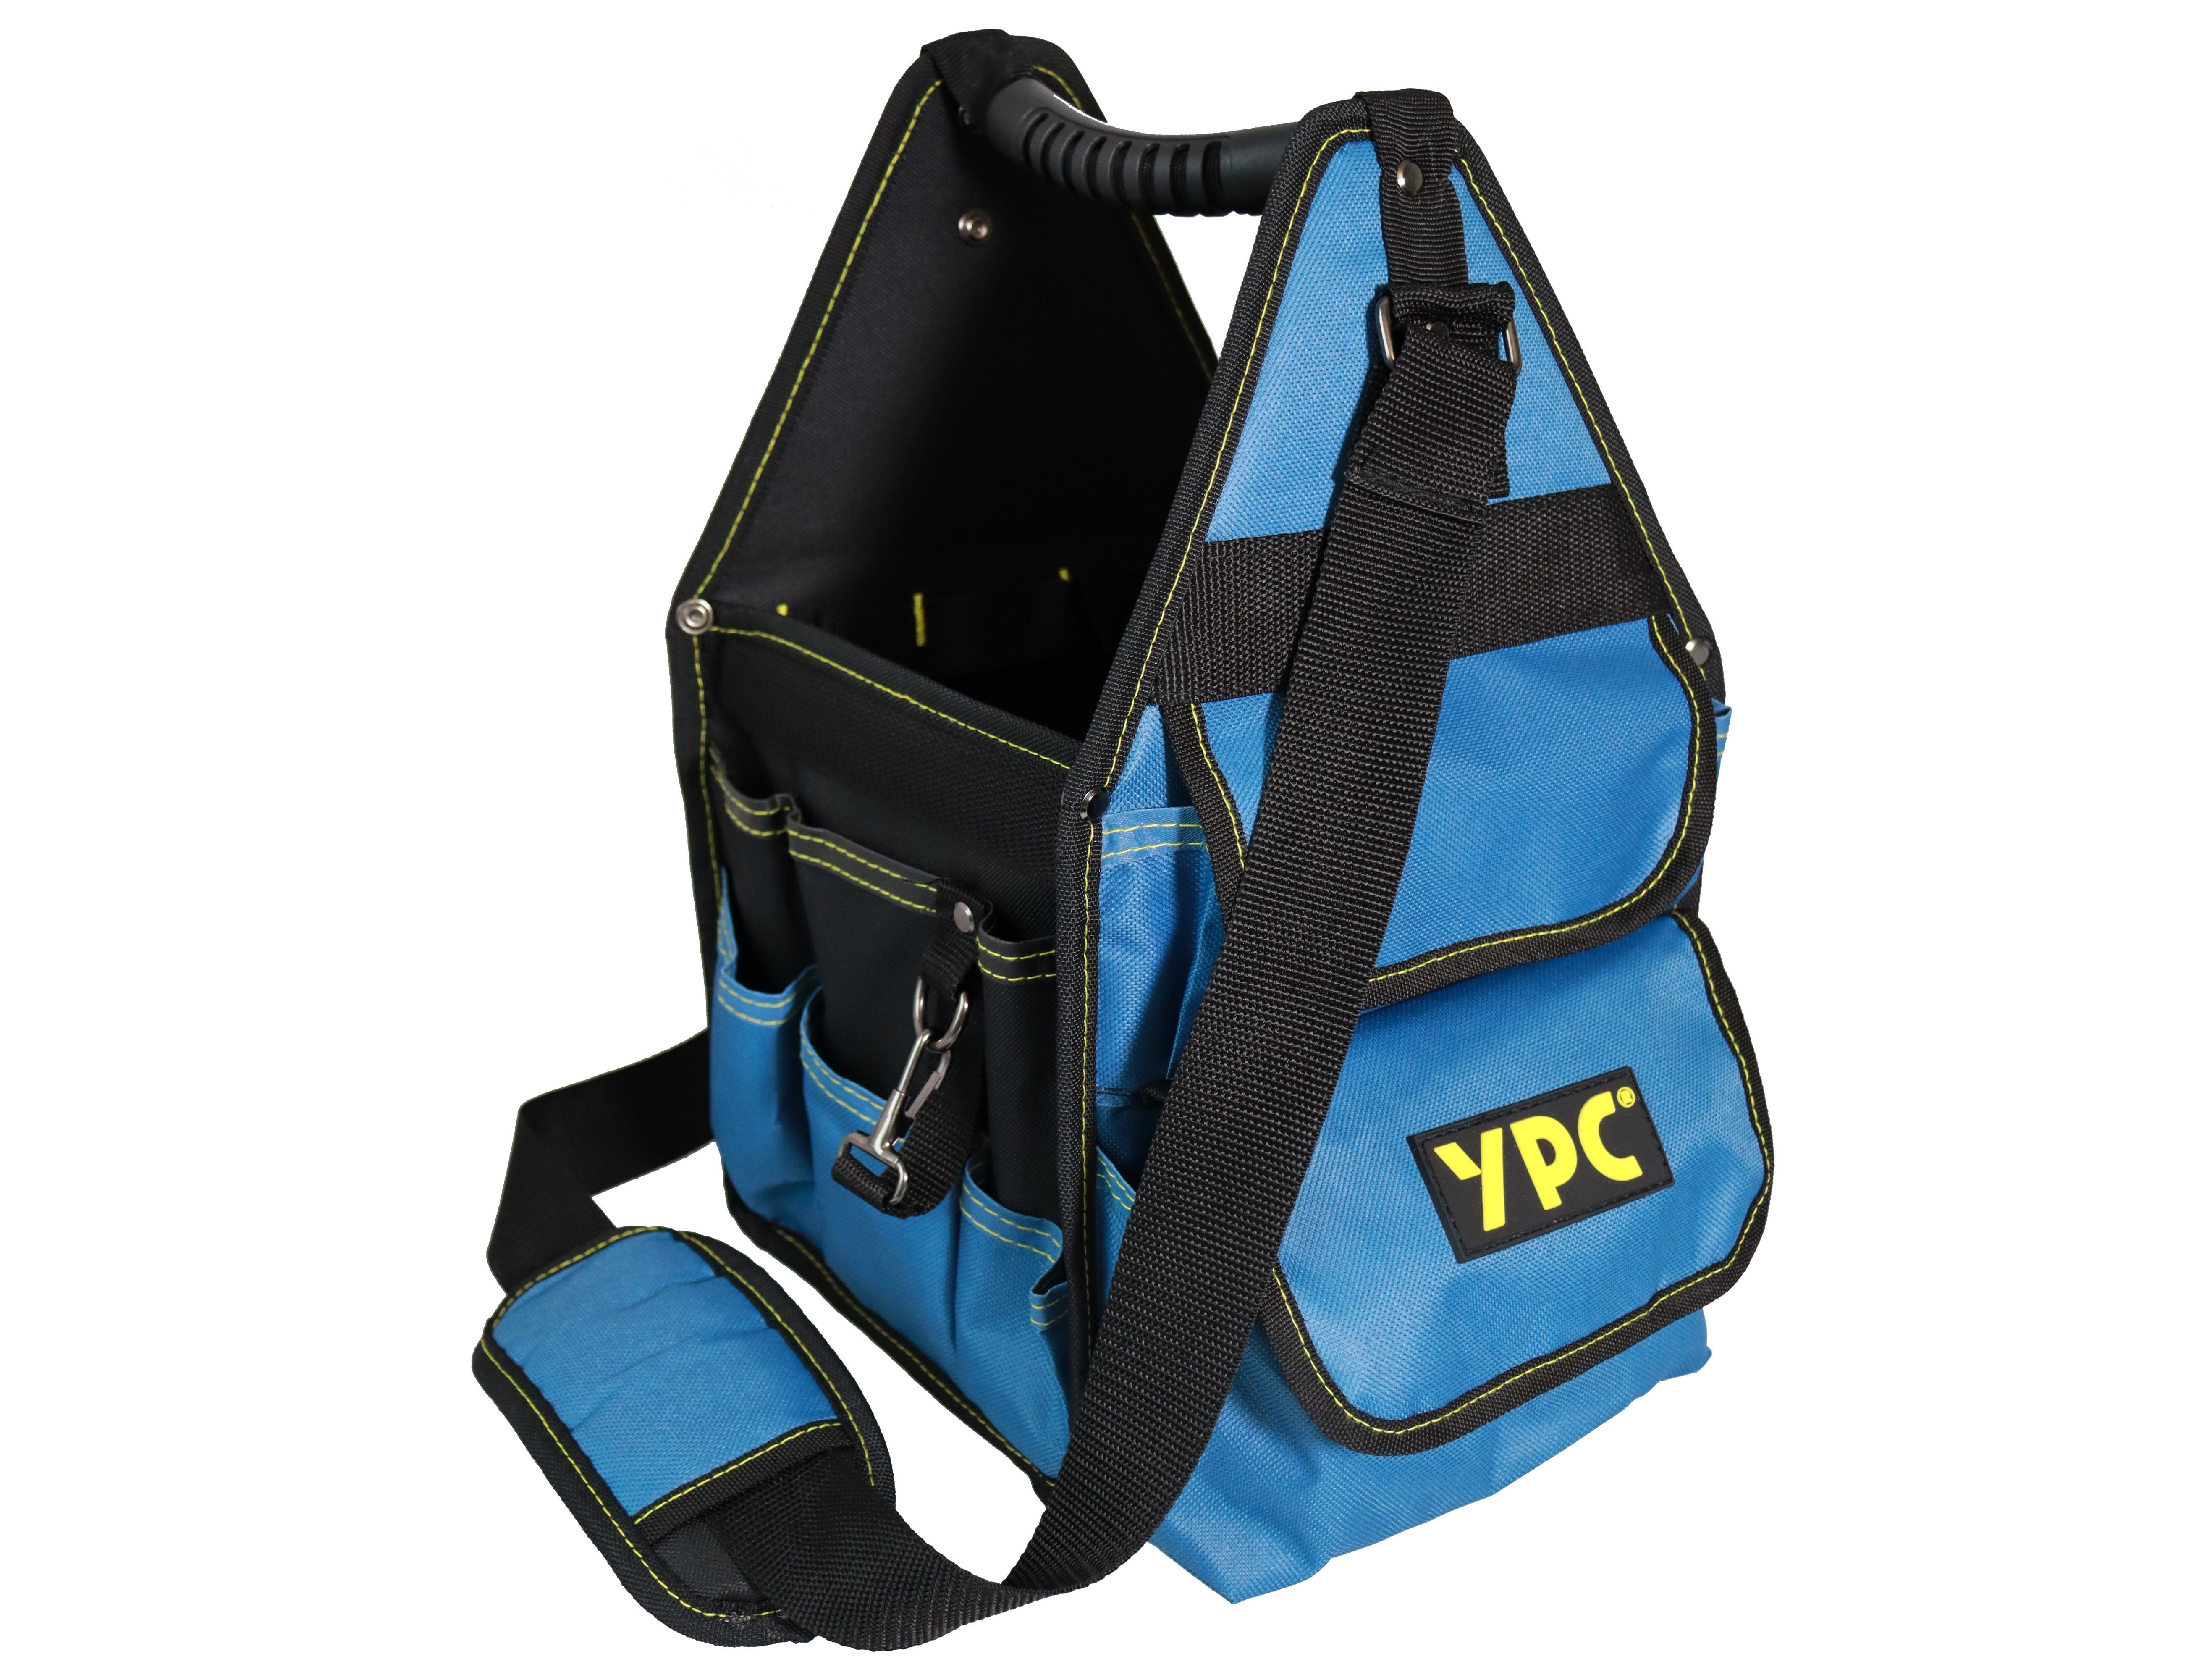 YPC Werkzeugtasche "Henchman" Werkzeugkorb L, offene Werkzeugtasche, 46x23x23cm, 10 kg Tragkraft, Tragetasche für Werkzeug mit Haltern, Fächern und Einschüben Blau